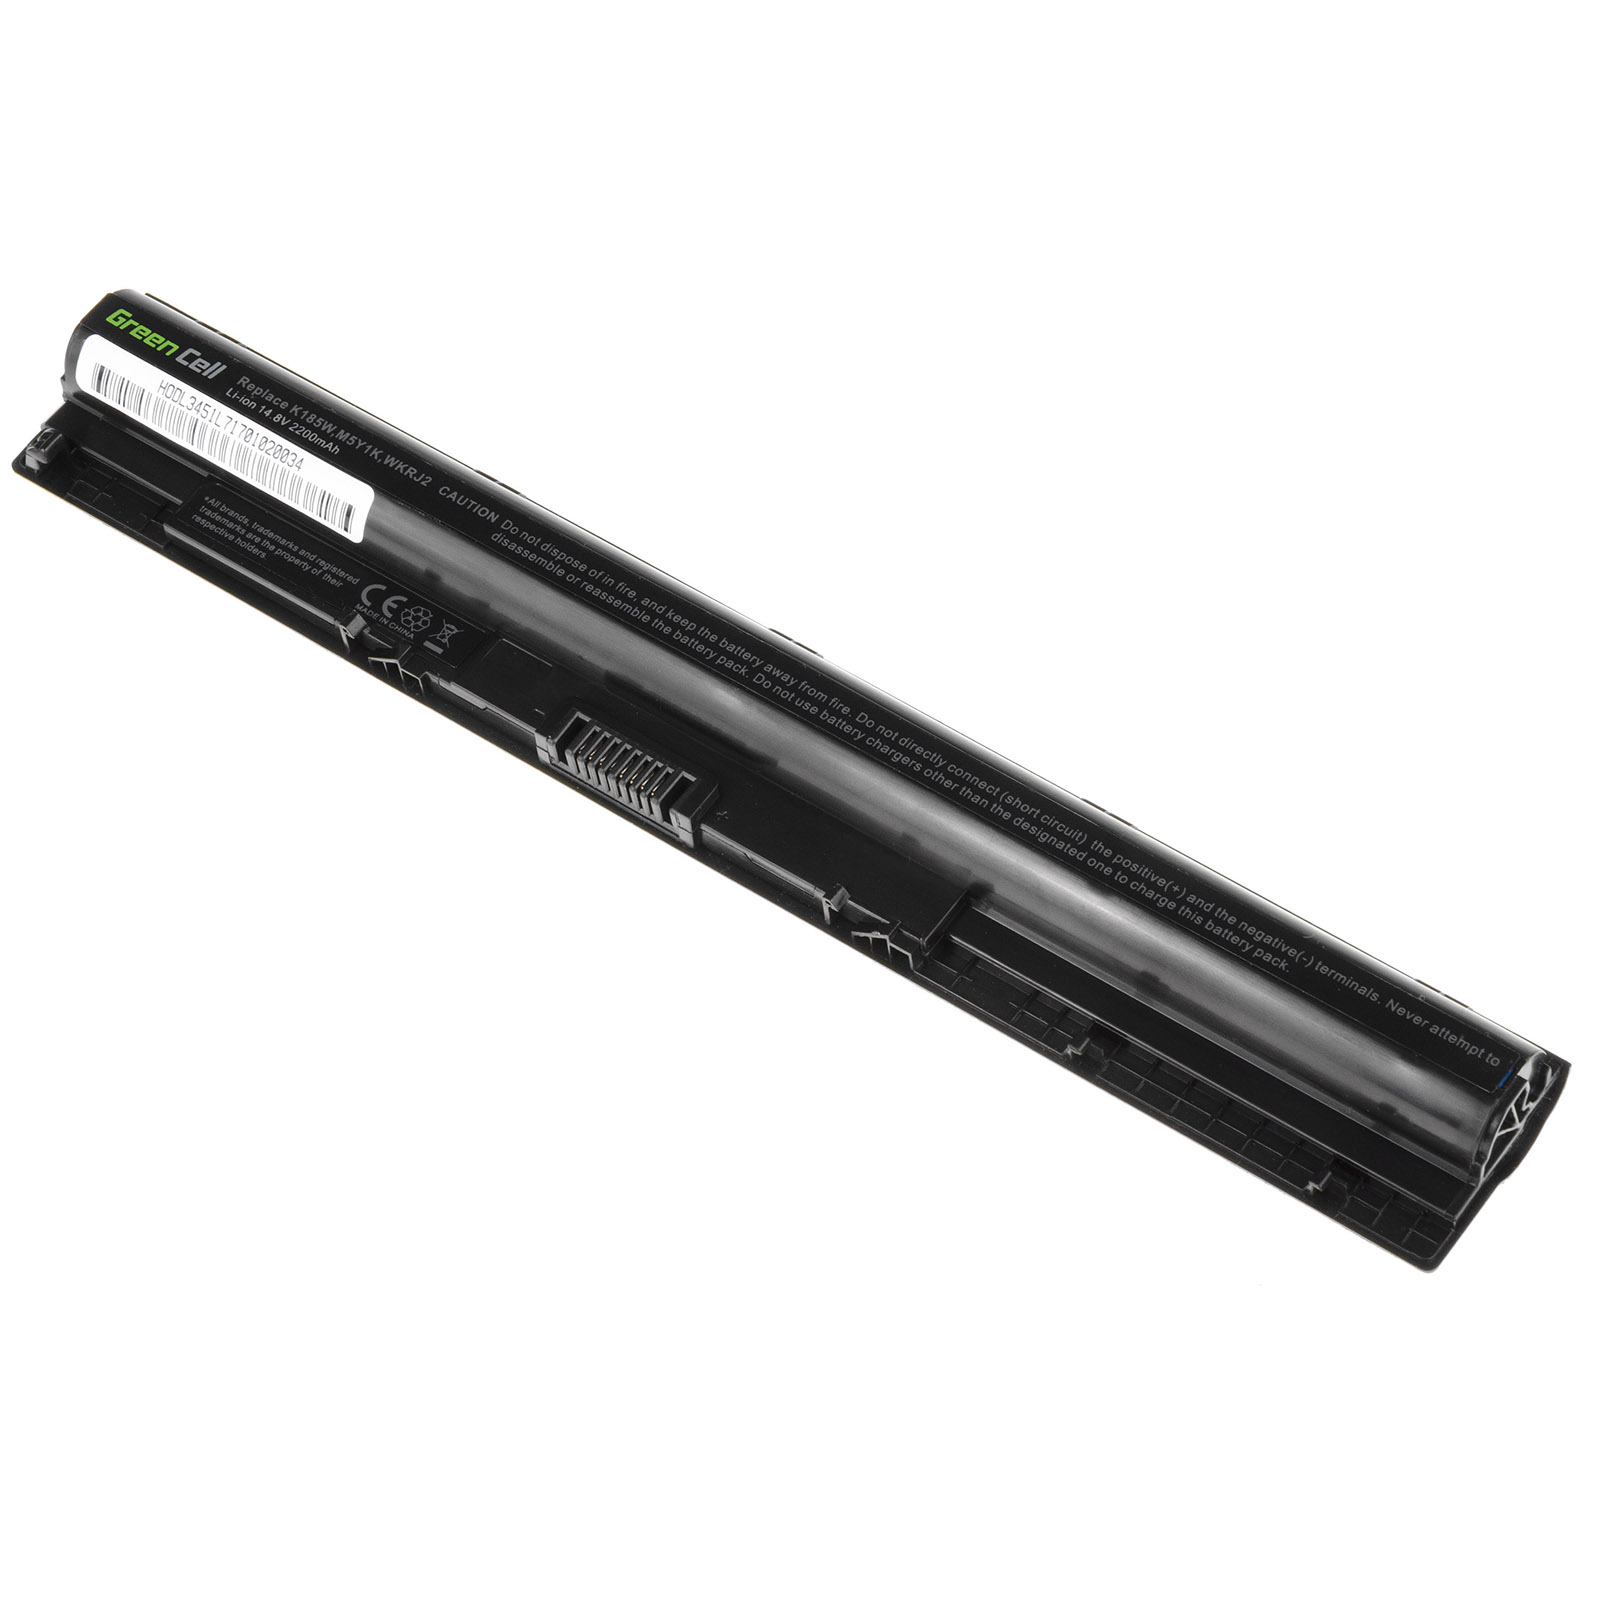 Batería para DELL GXVJ3 HD4J0 K185W M5Y1K WKRJ2 453-BBBR(compatible)